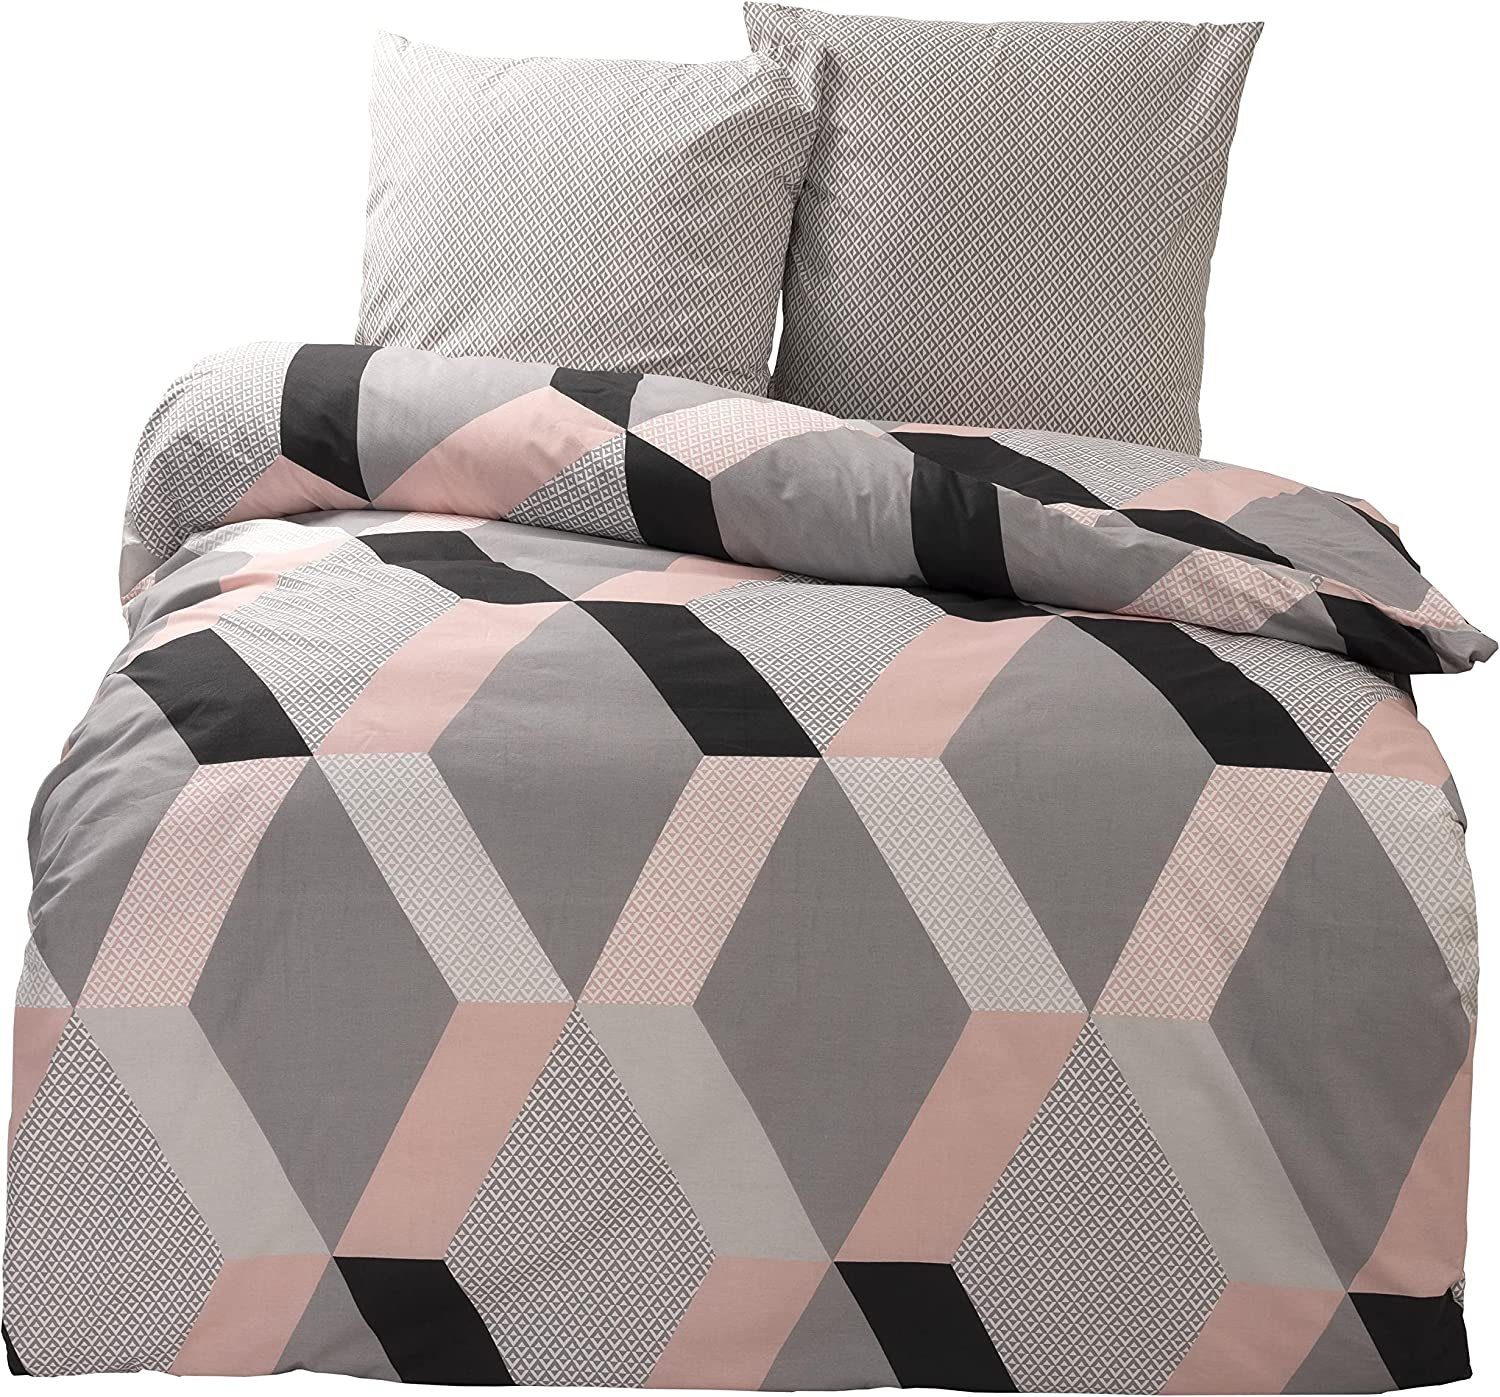 Bettwäsche Grafisch rosa / grau, One Home, Renforcé, 2 teilig, Baumwolle, Geometrisch und modern, Übergröße